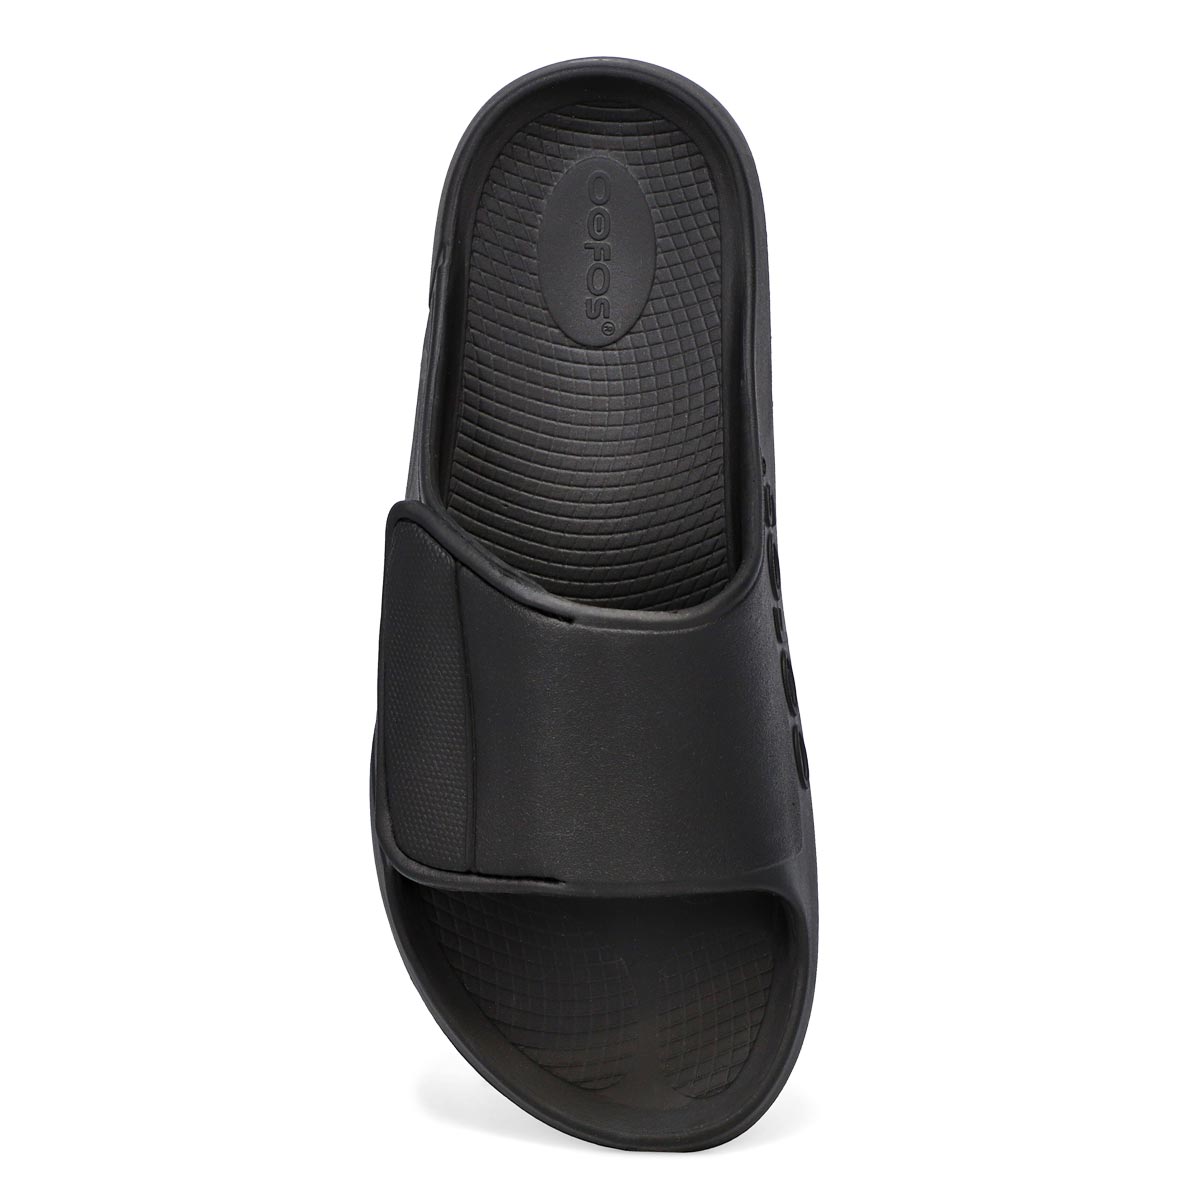 Men's Ooahh Sport Flex Sandals -  Matte Black